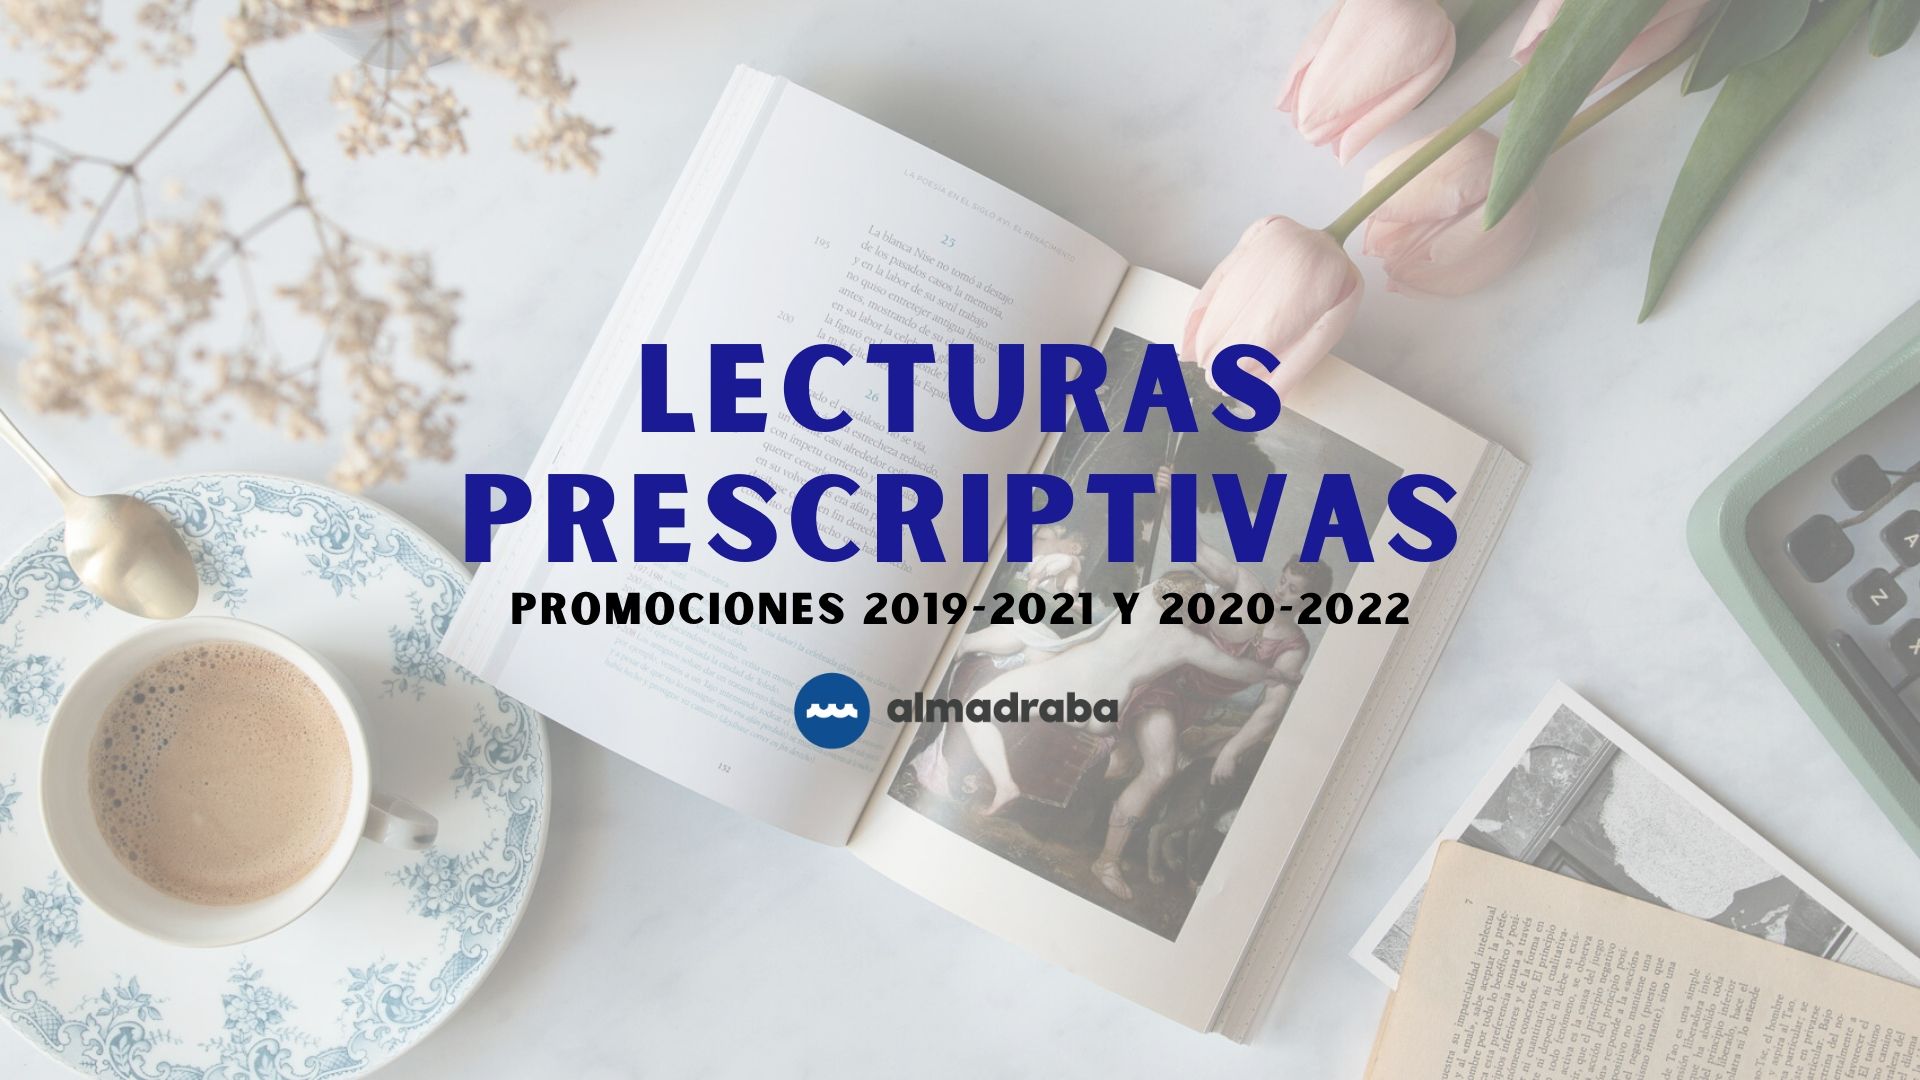 Lecturas prescriptivas para el bachillerato. Promociones 2019-2021 y 2020-2022.